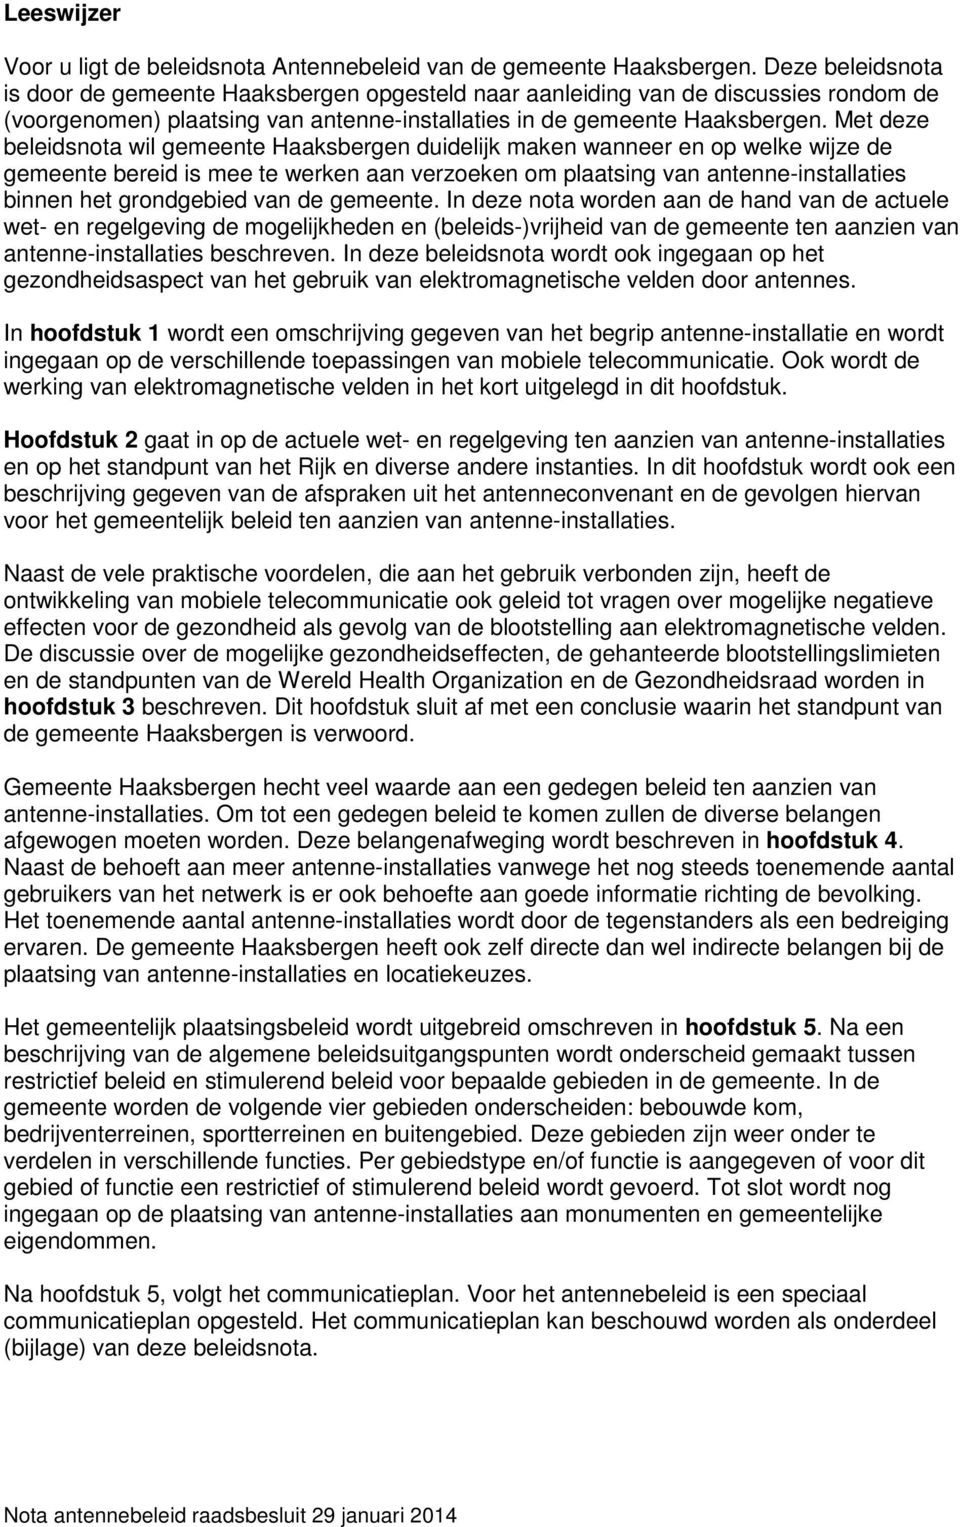 Met deze beleidsnota wil gemeente Haaksbergen duidelijk maken wanneer en op welke wijze de gemeente bereid is mee te werken aan verzoeken om plaatsing van antenne-installaties binnen het grondgebied